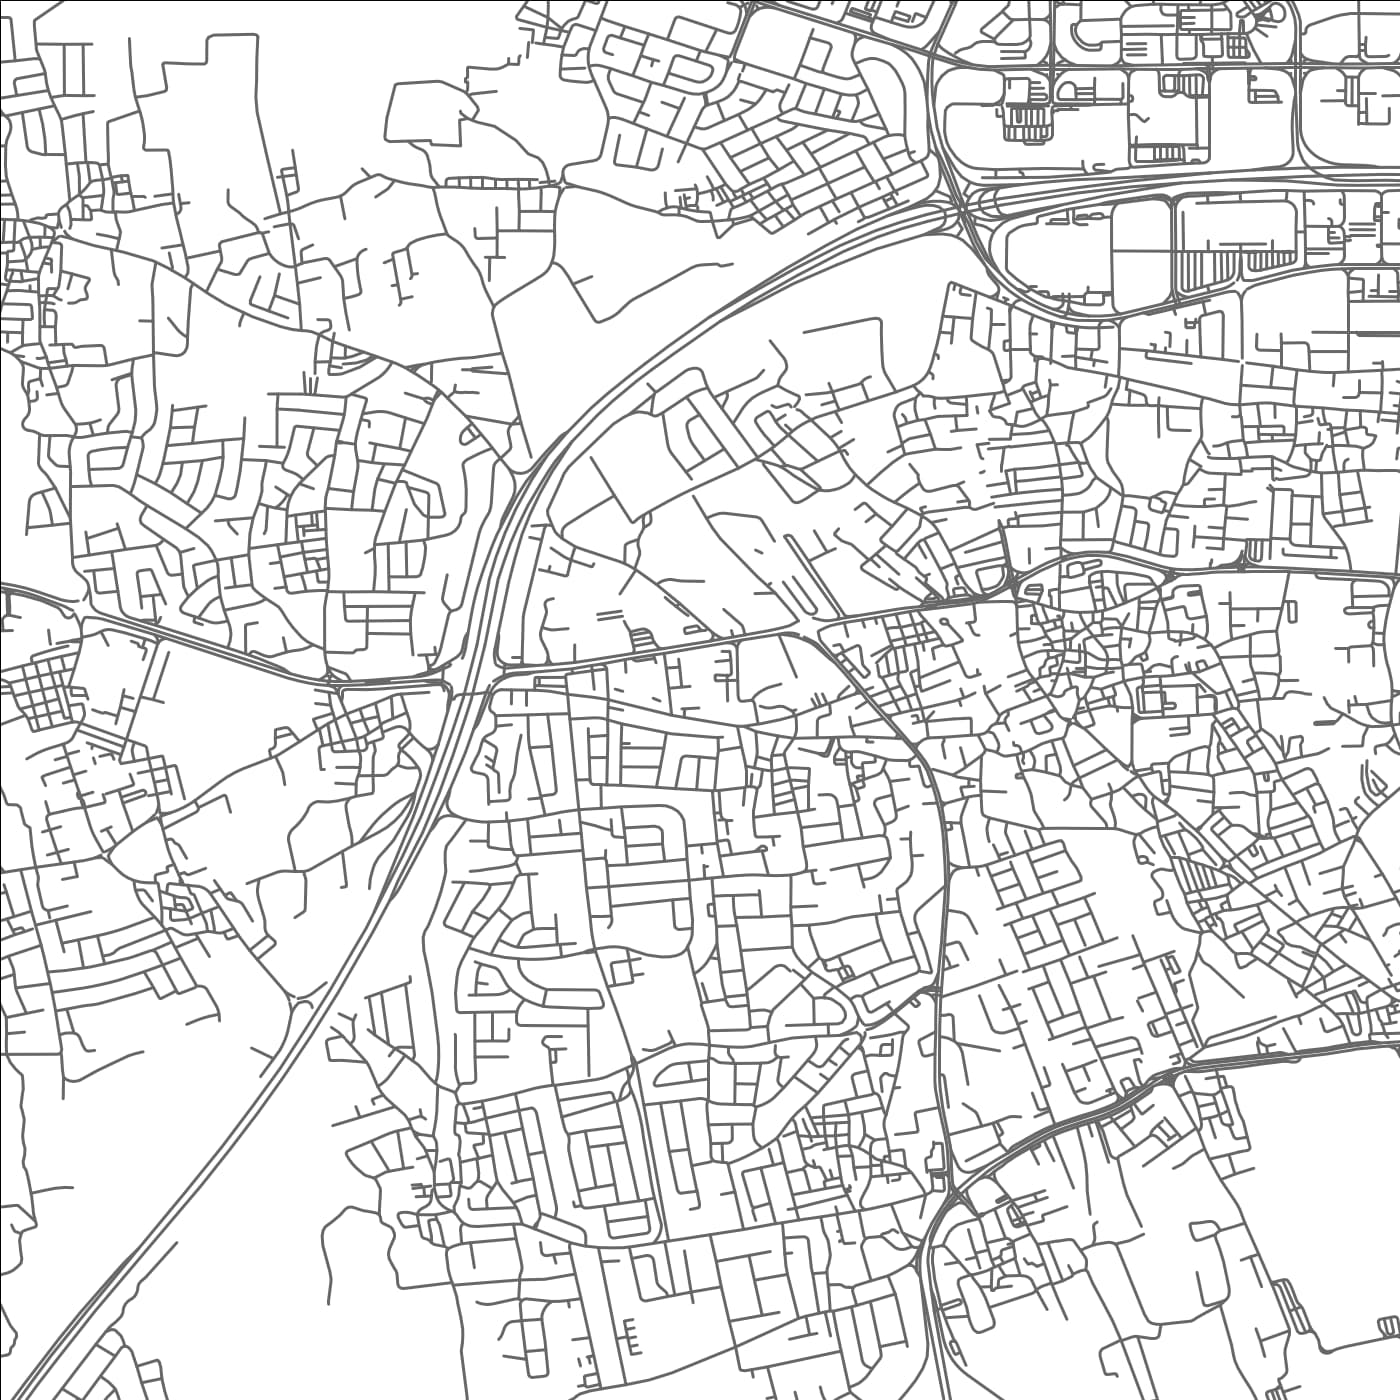 ROAD MAP OF JABALAT ḨABASHĪ, BAHRAIN BY MAPBAKES